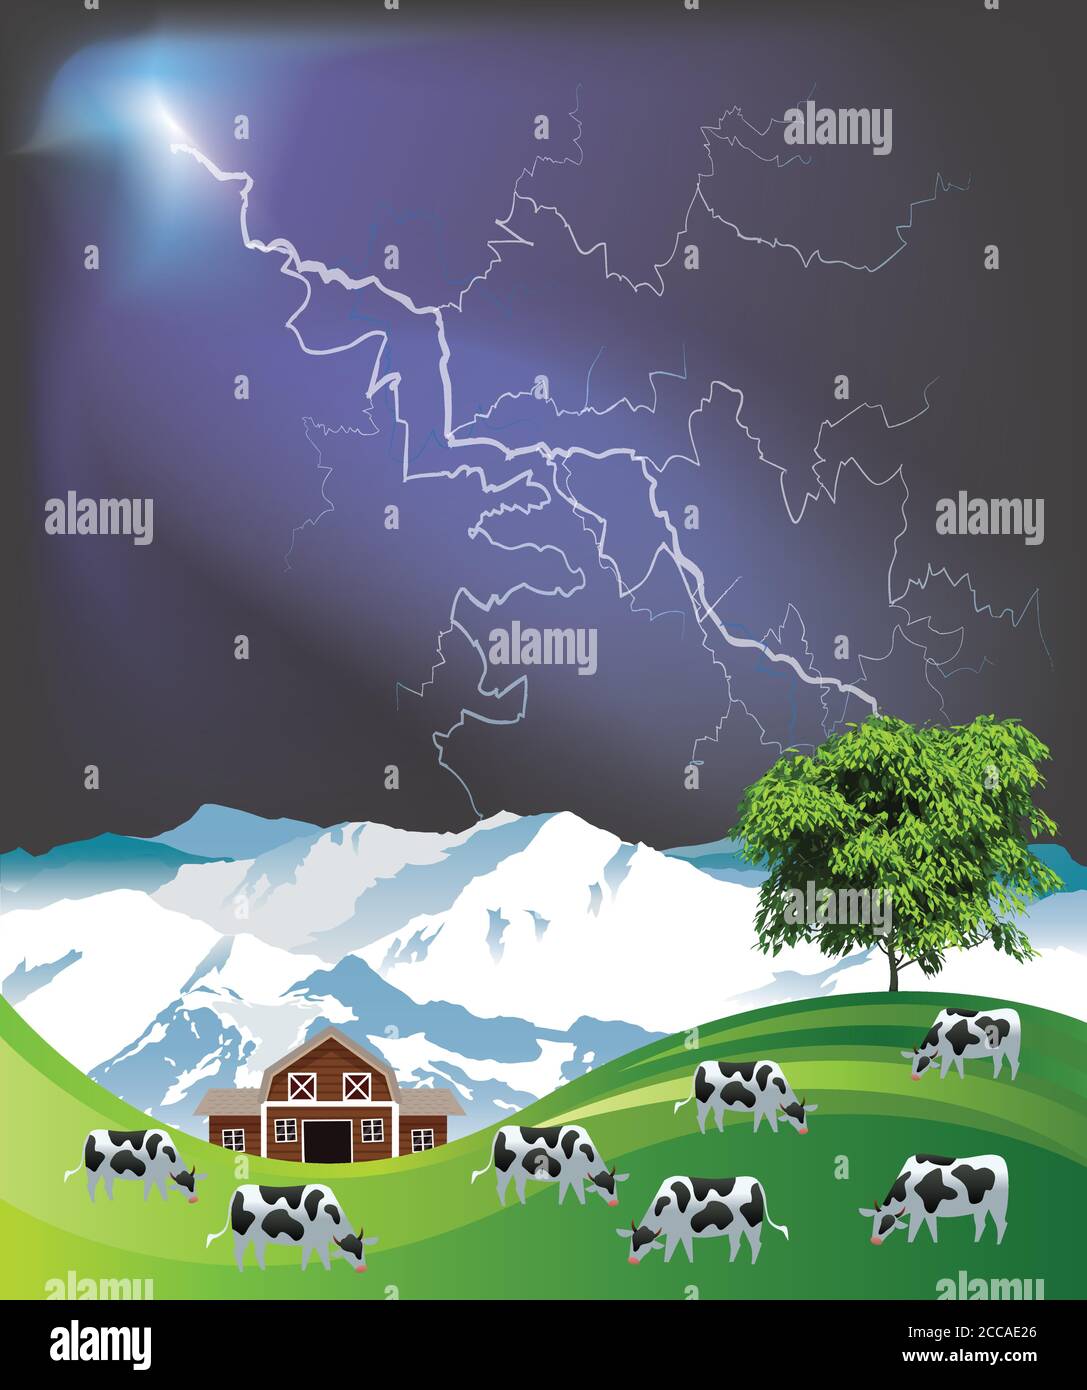 Pintoresca escena rural con una manada de vacas pastando verano pastos montañosos de tierras bajas contra un espectacular cielo de tormenta Ilustración del Vector